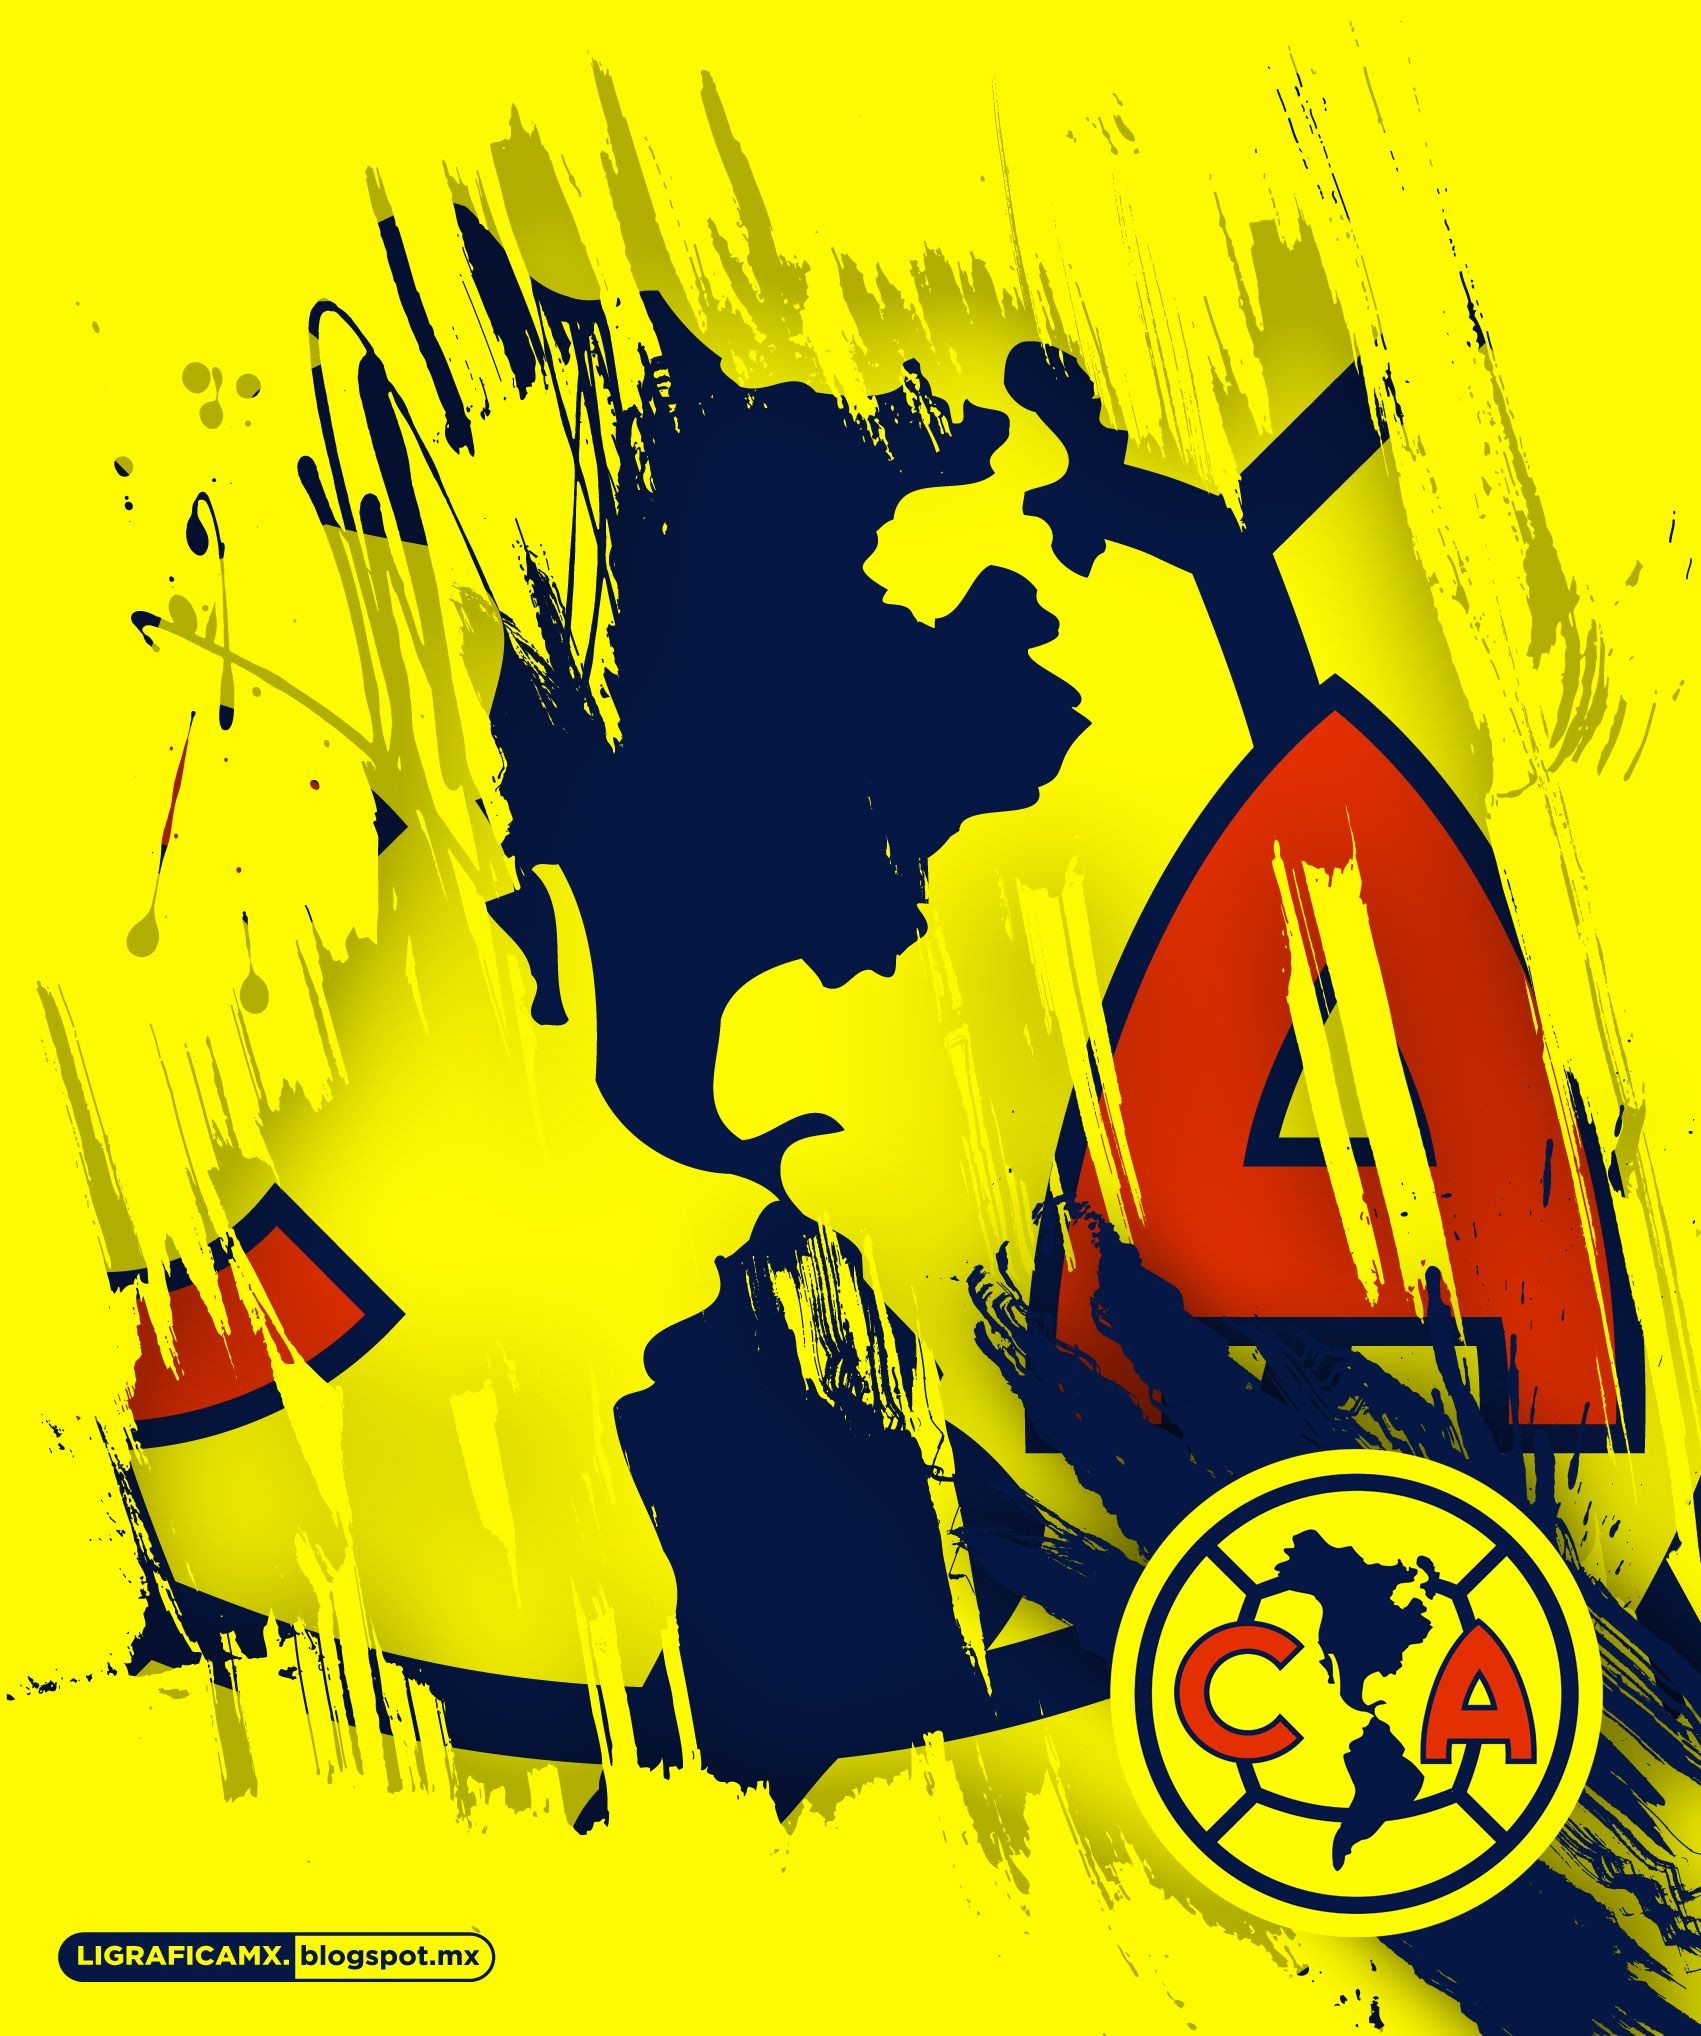 1701x2036 #Wallpaper #AmÃ©rica #LigraficaMX Mexican Soccer League, Club AmÃ©rica,  Liguilla Mx,